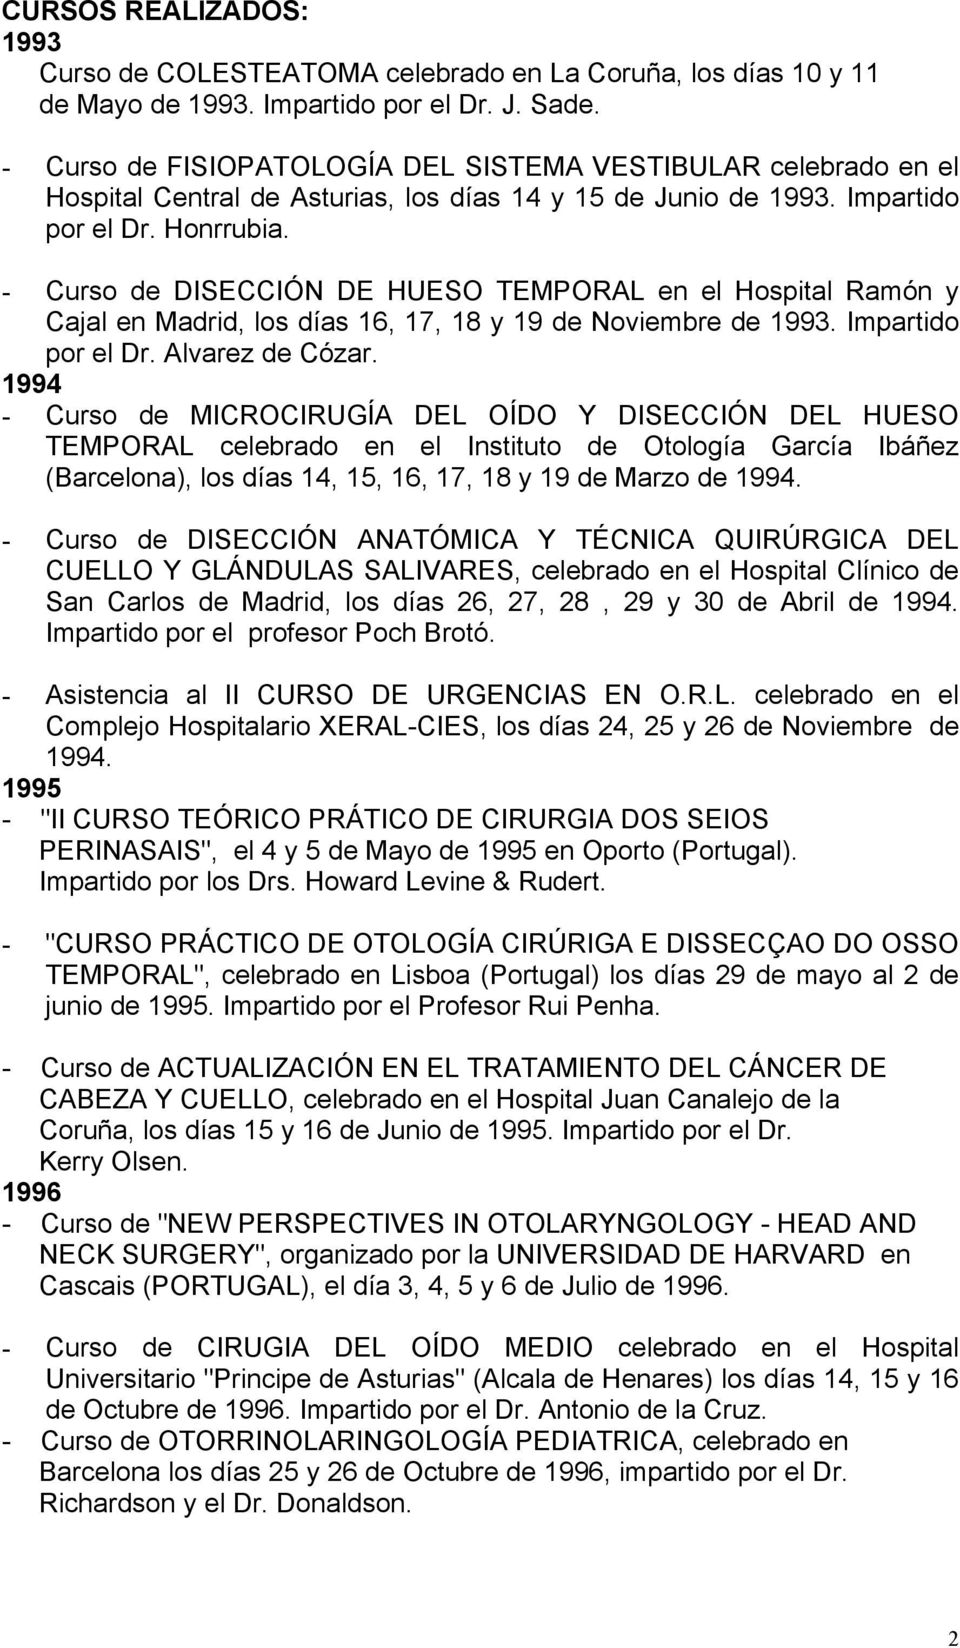 - Curso de DISECCIÓN DE HUESO TEMPORAL en el Hospital Ramón y Cajal en Madrid, los días 16, 17, 18 y 19 de Noviembre de 1993. Impartido por el Dr. Alvarez de Cózar.